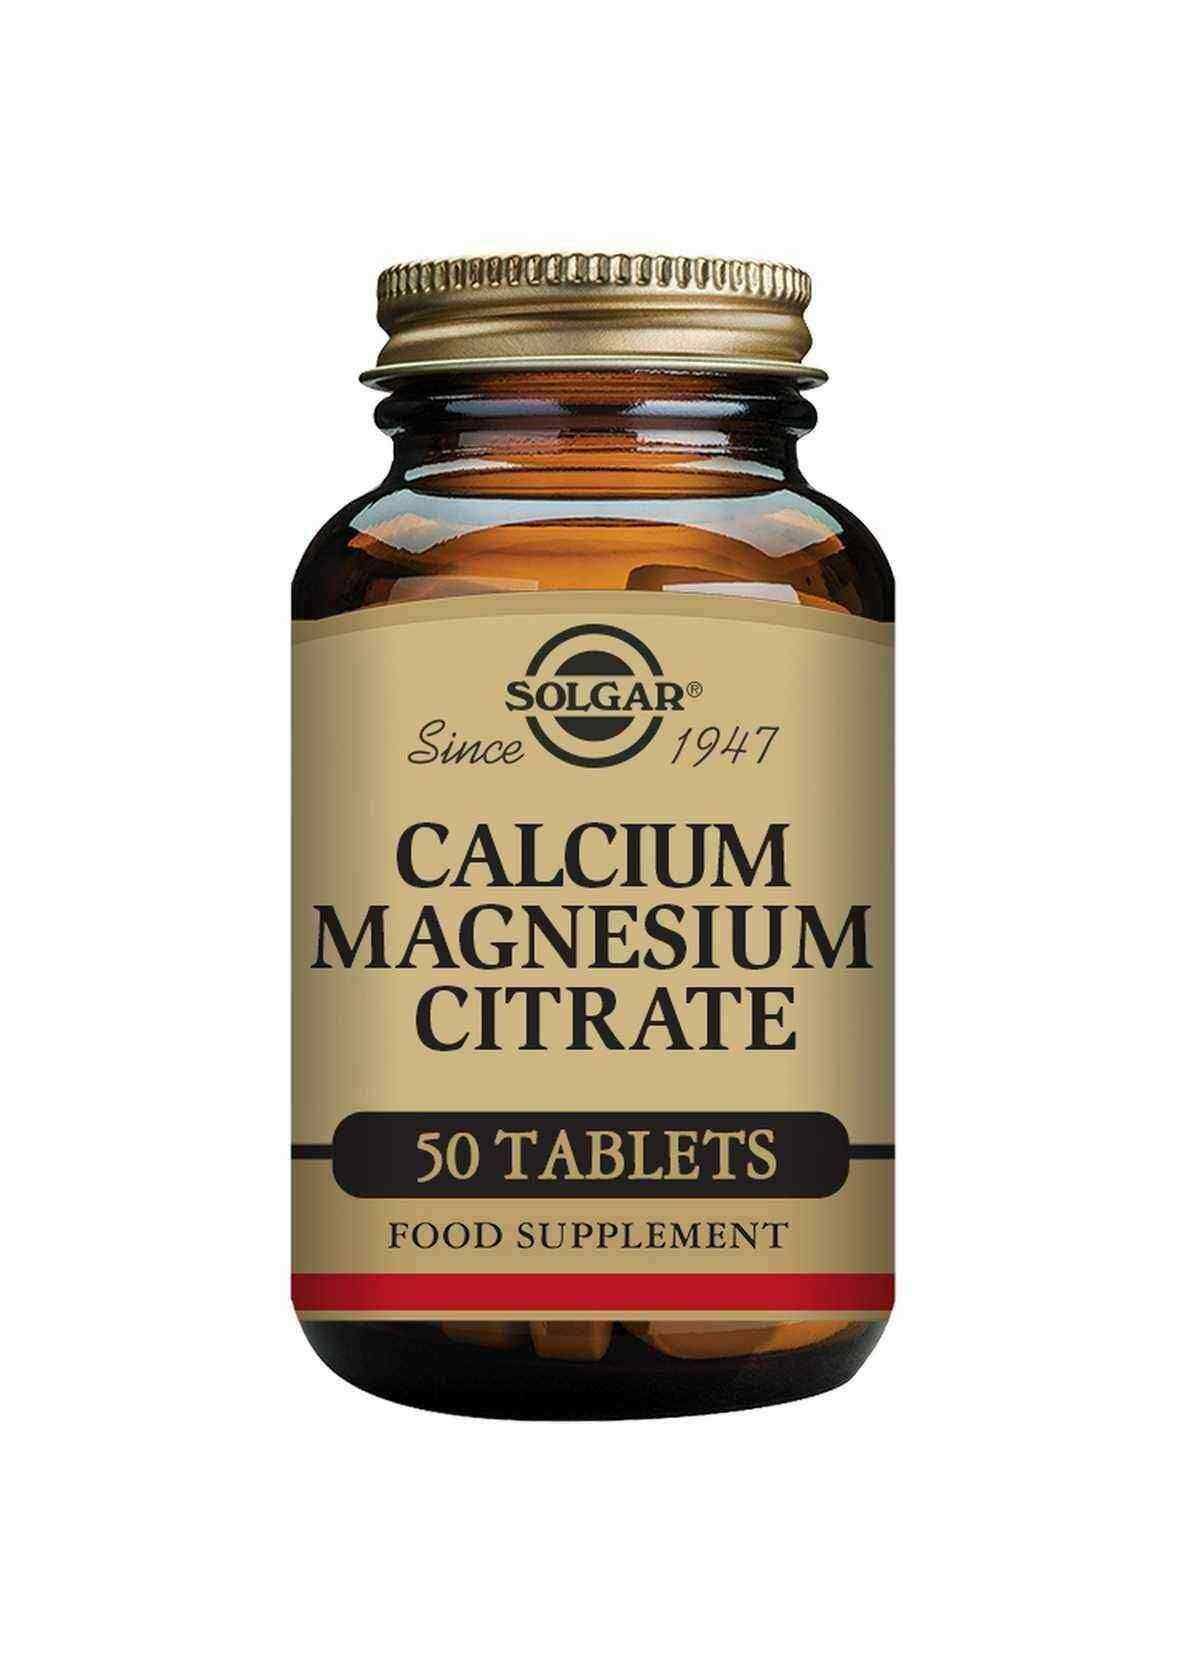 Solgar Calcium Magnesium Citrate - 50 tablets